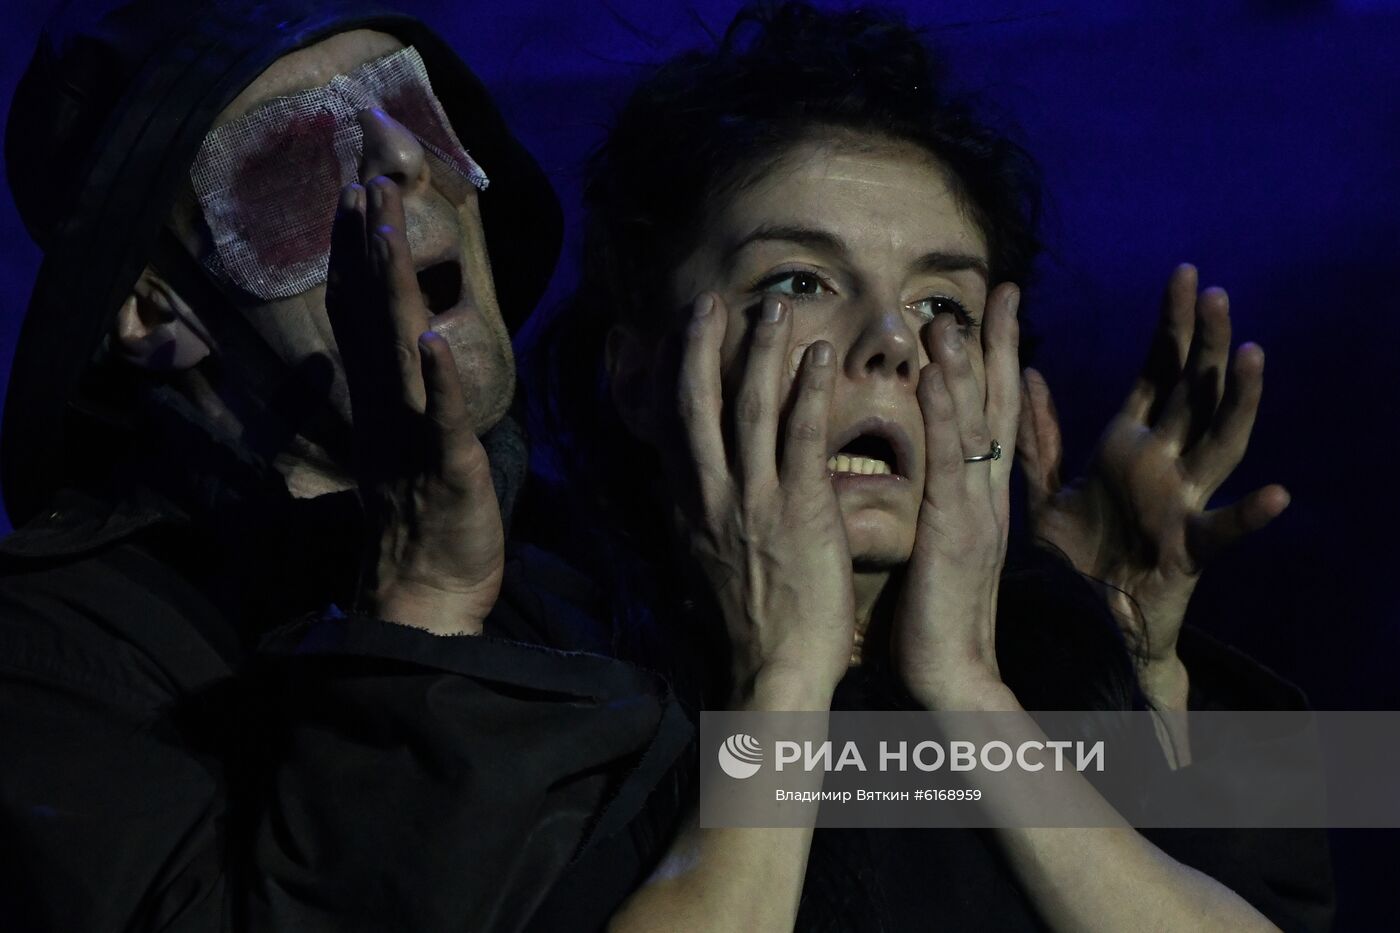 Балет "Мать" по сказке Андерсена на фестивале искусств в Сочи